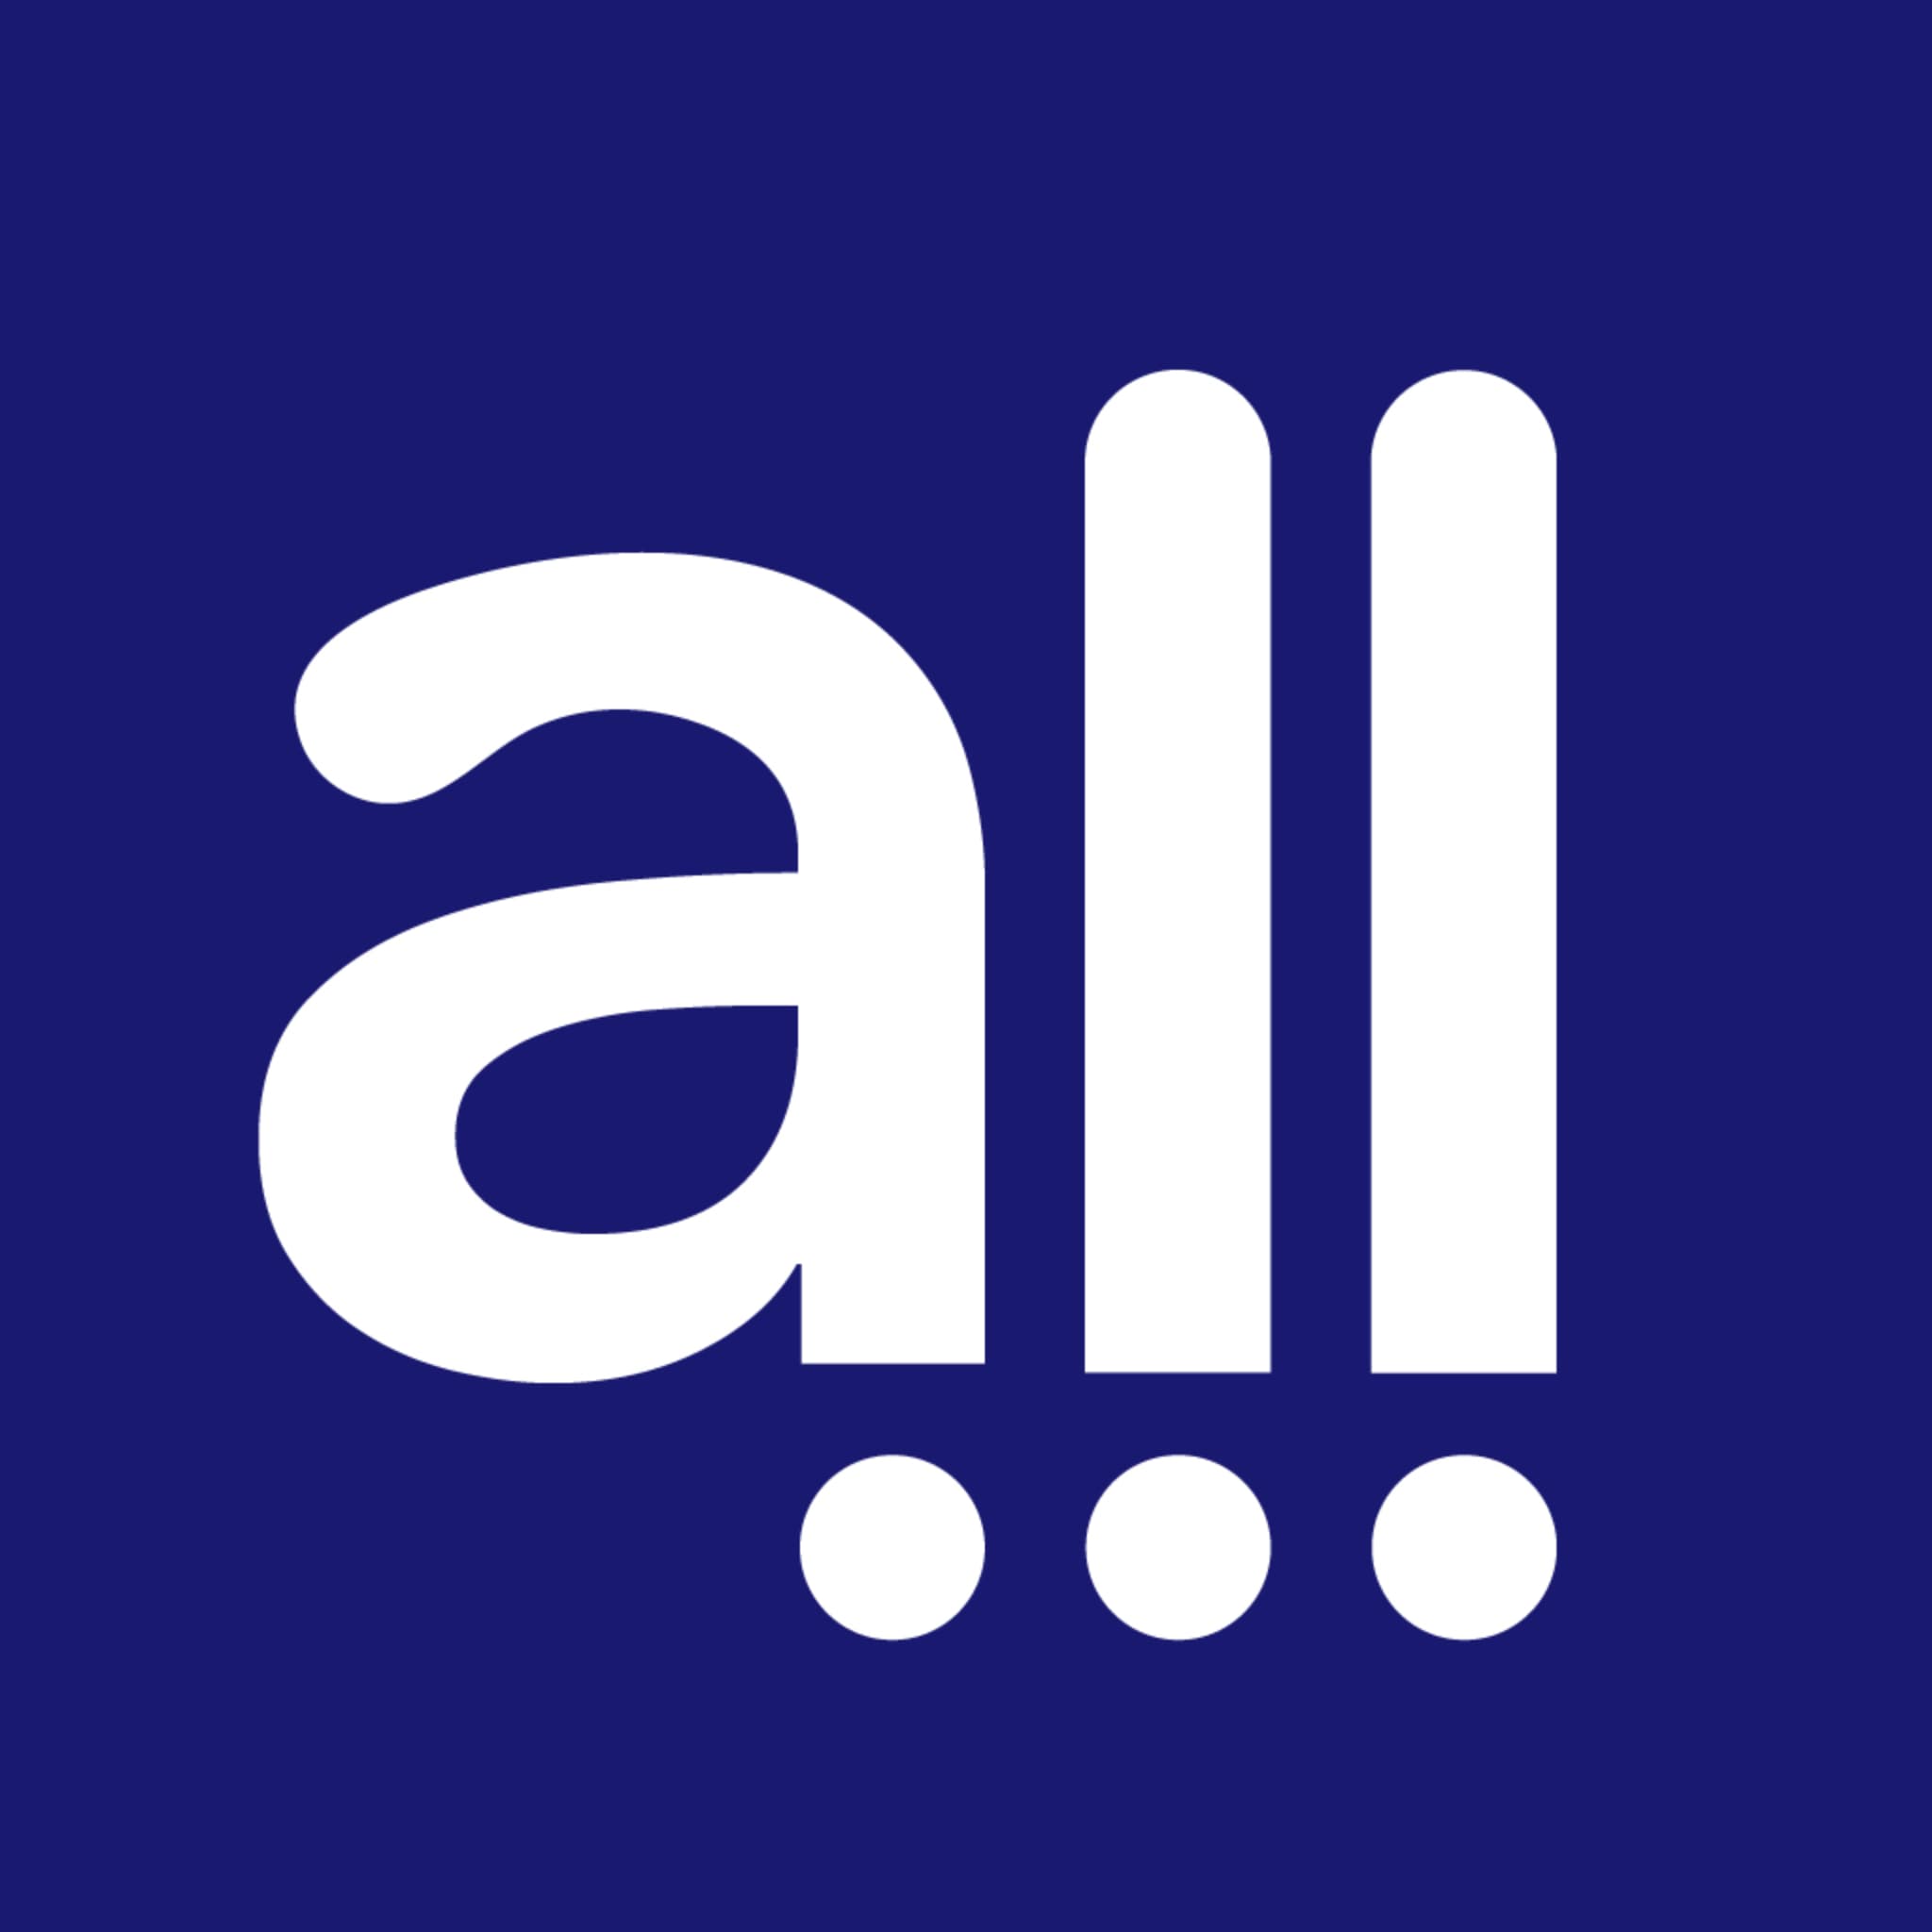 All Commerce's logo